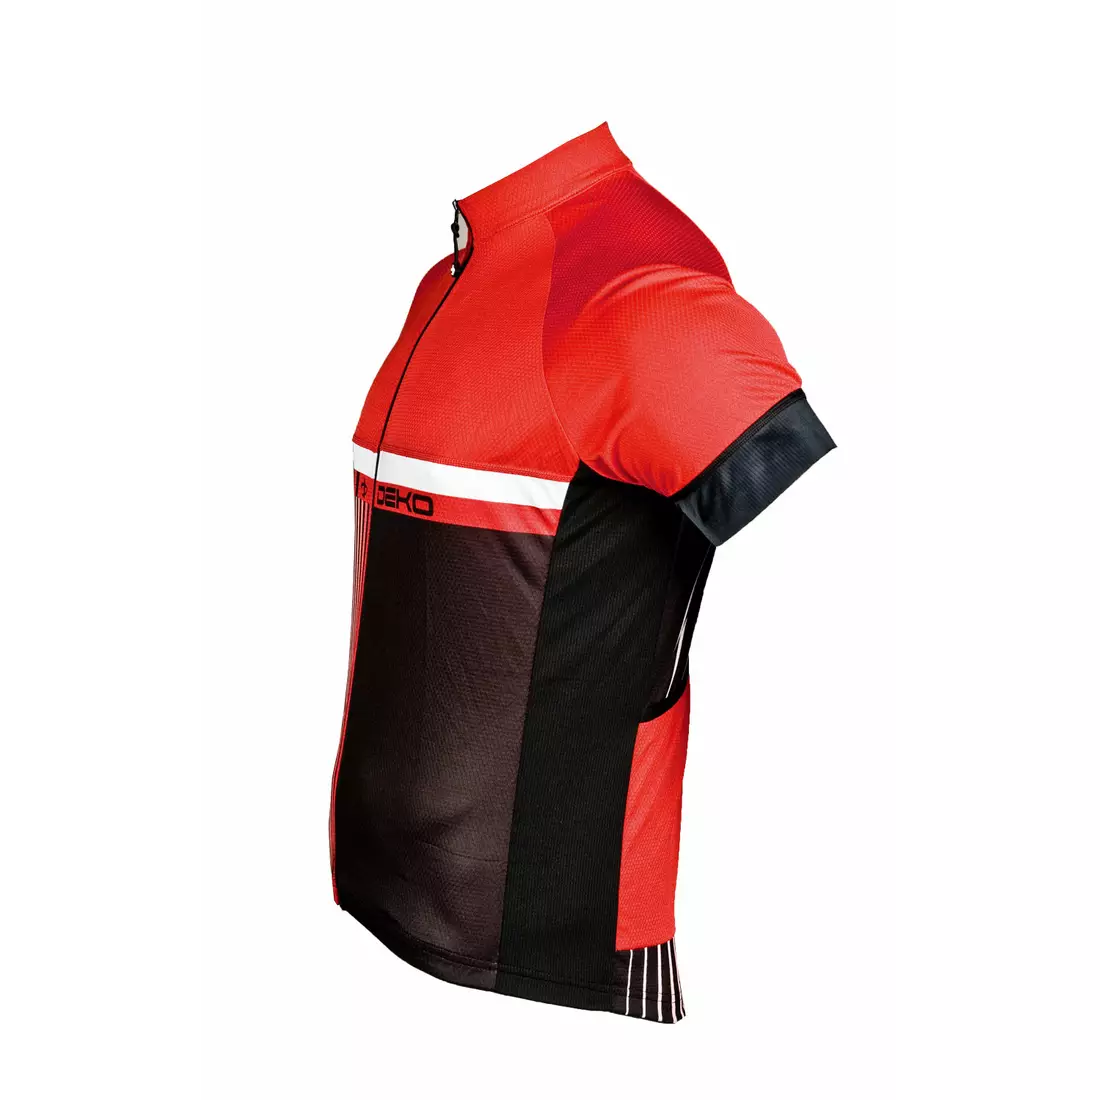 Pánsky cyklistický dres DEKO STYLE, čierno-červený